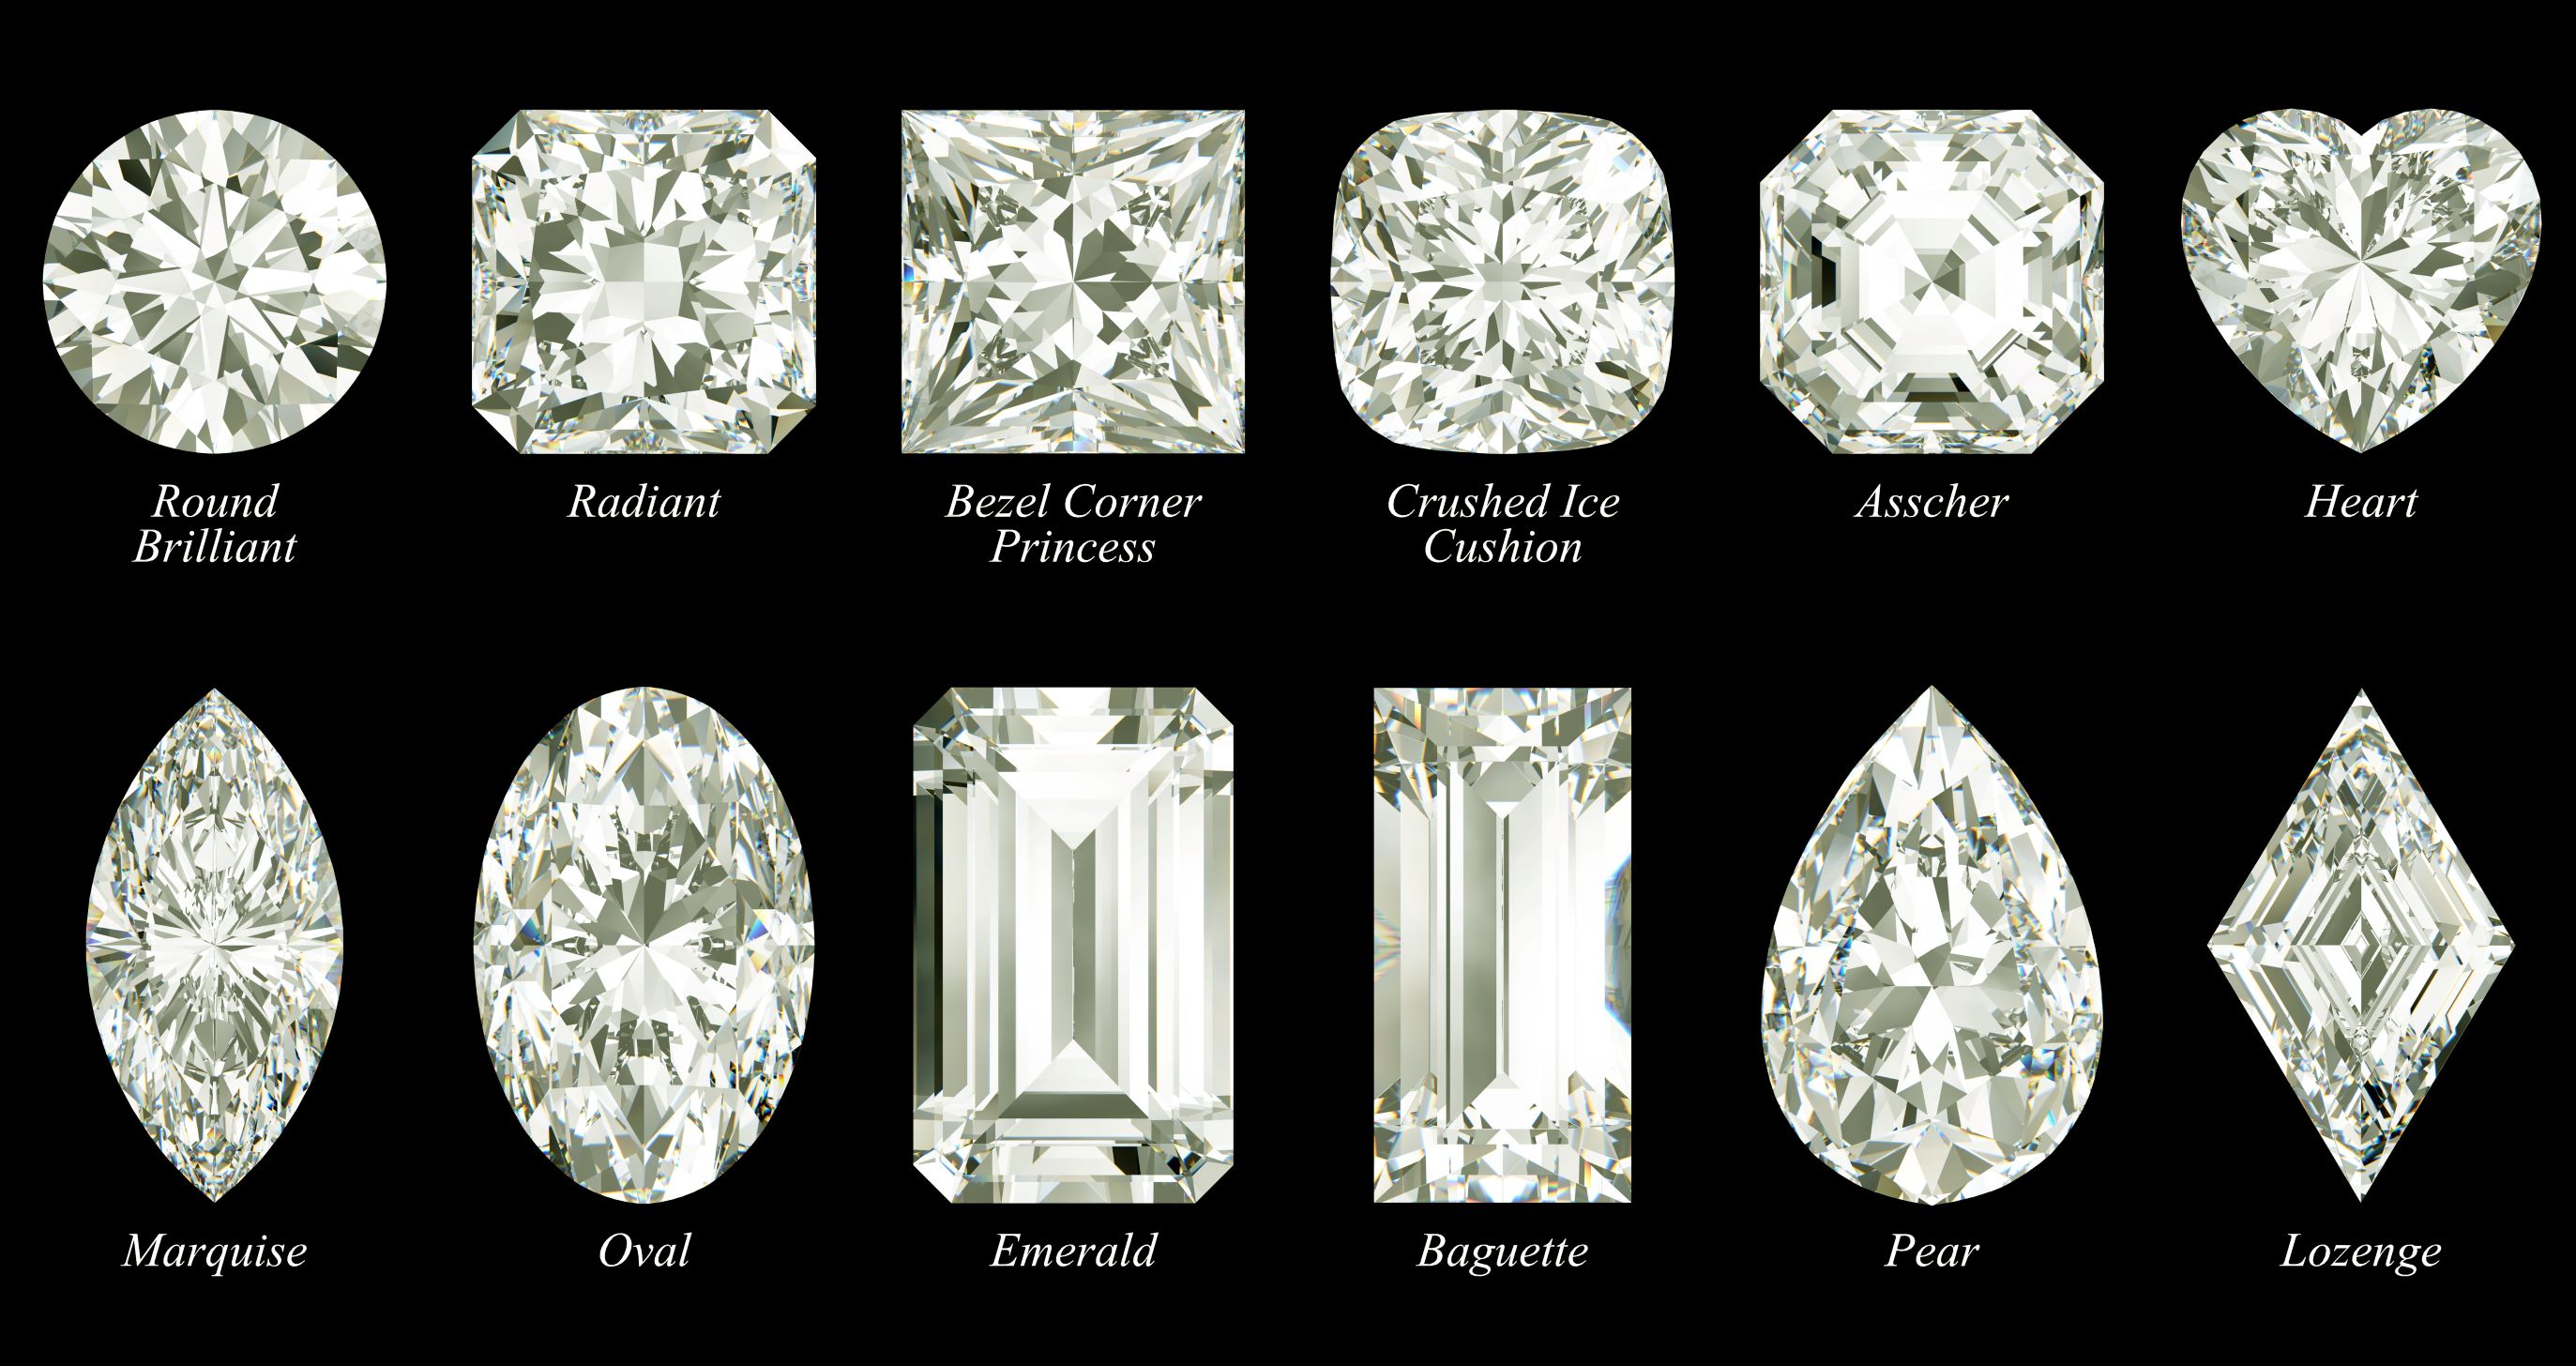 Buy Loose Gemstones Online, CZ Cubic Zirconia Stones, Natural Gems